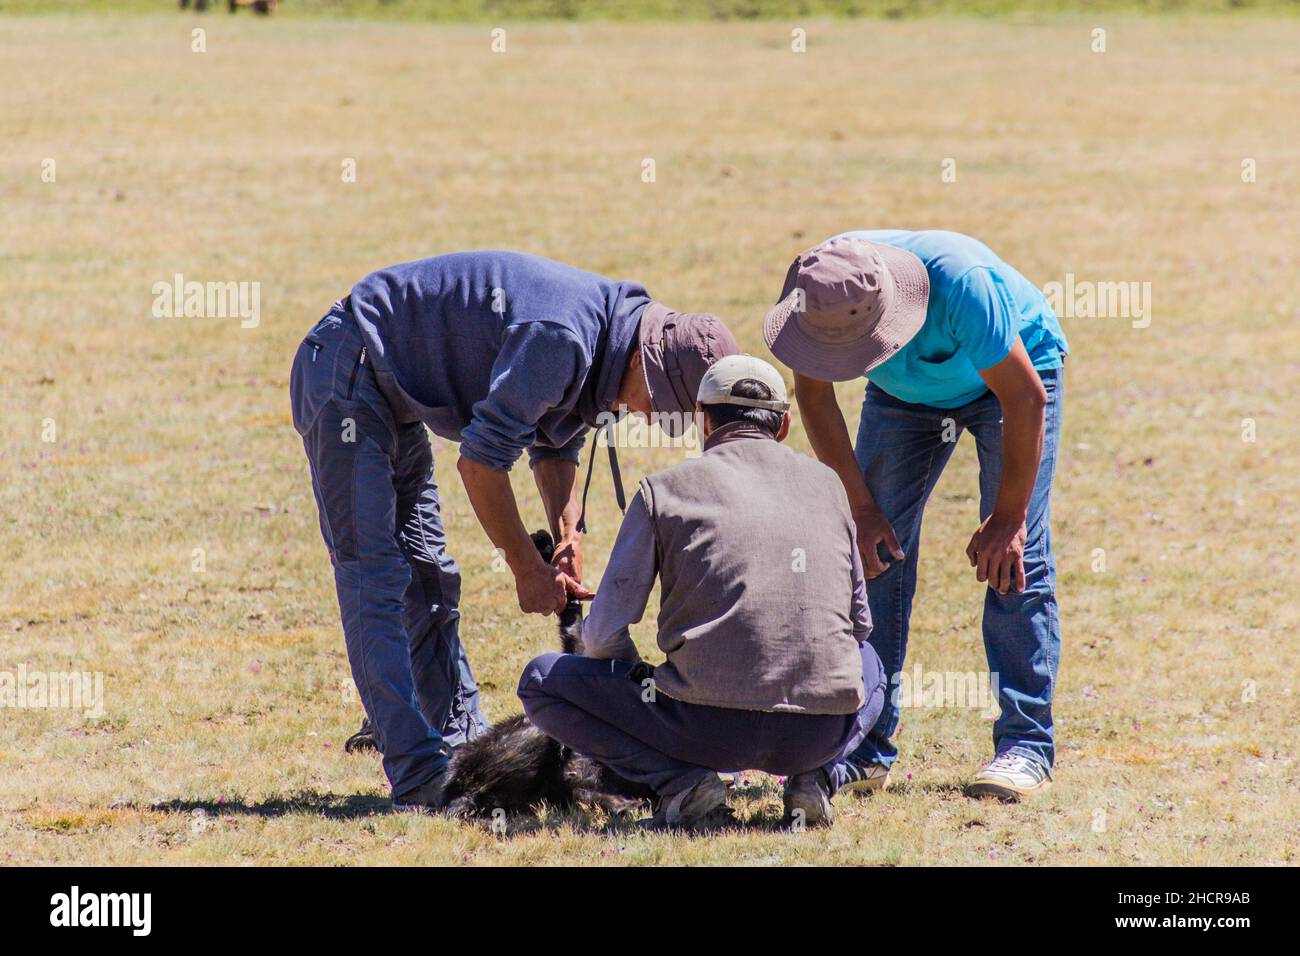 CANZONE KOL, KIRGHIZISTAN - 25 LUGLIO 2018: La gente prepara una capra per kok boru, tradizionale gioco di cavalli, con una carcassa di capra, al National Horse Games Fes Foto Stock